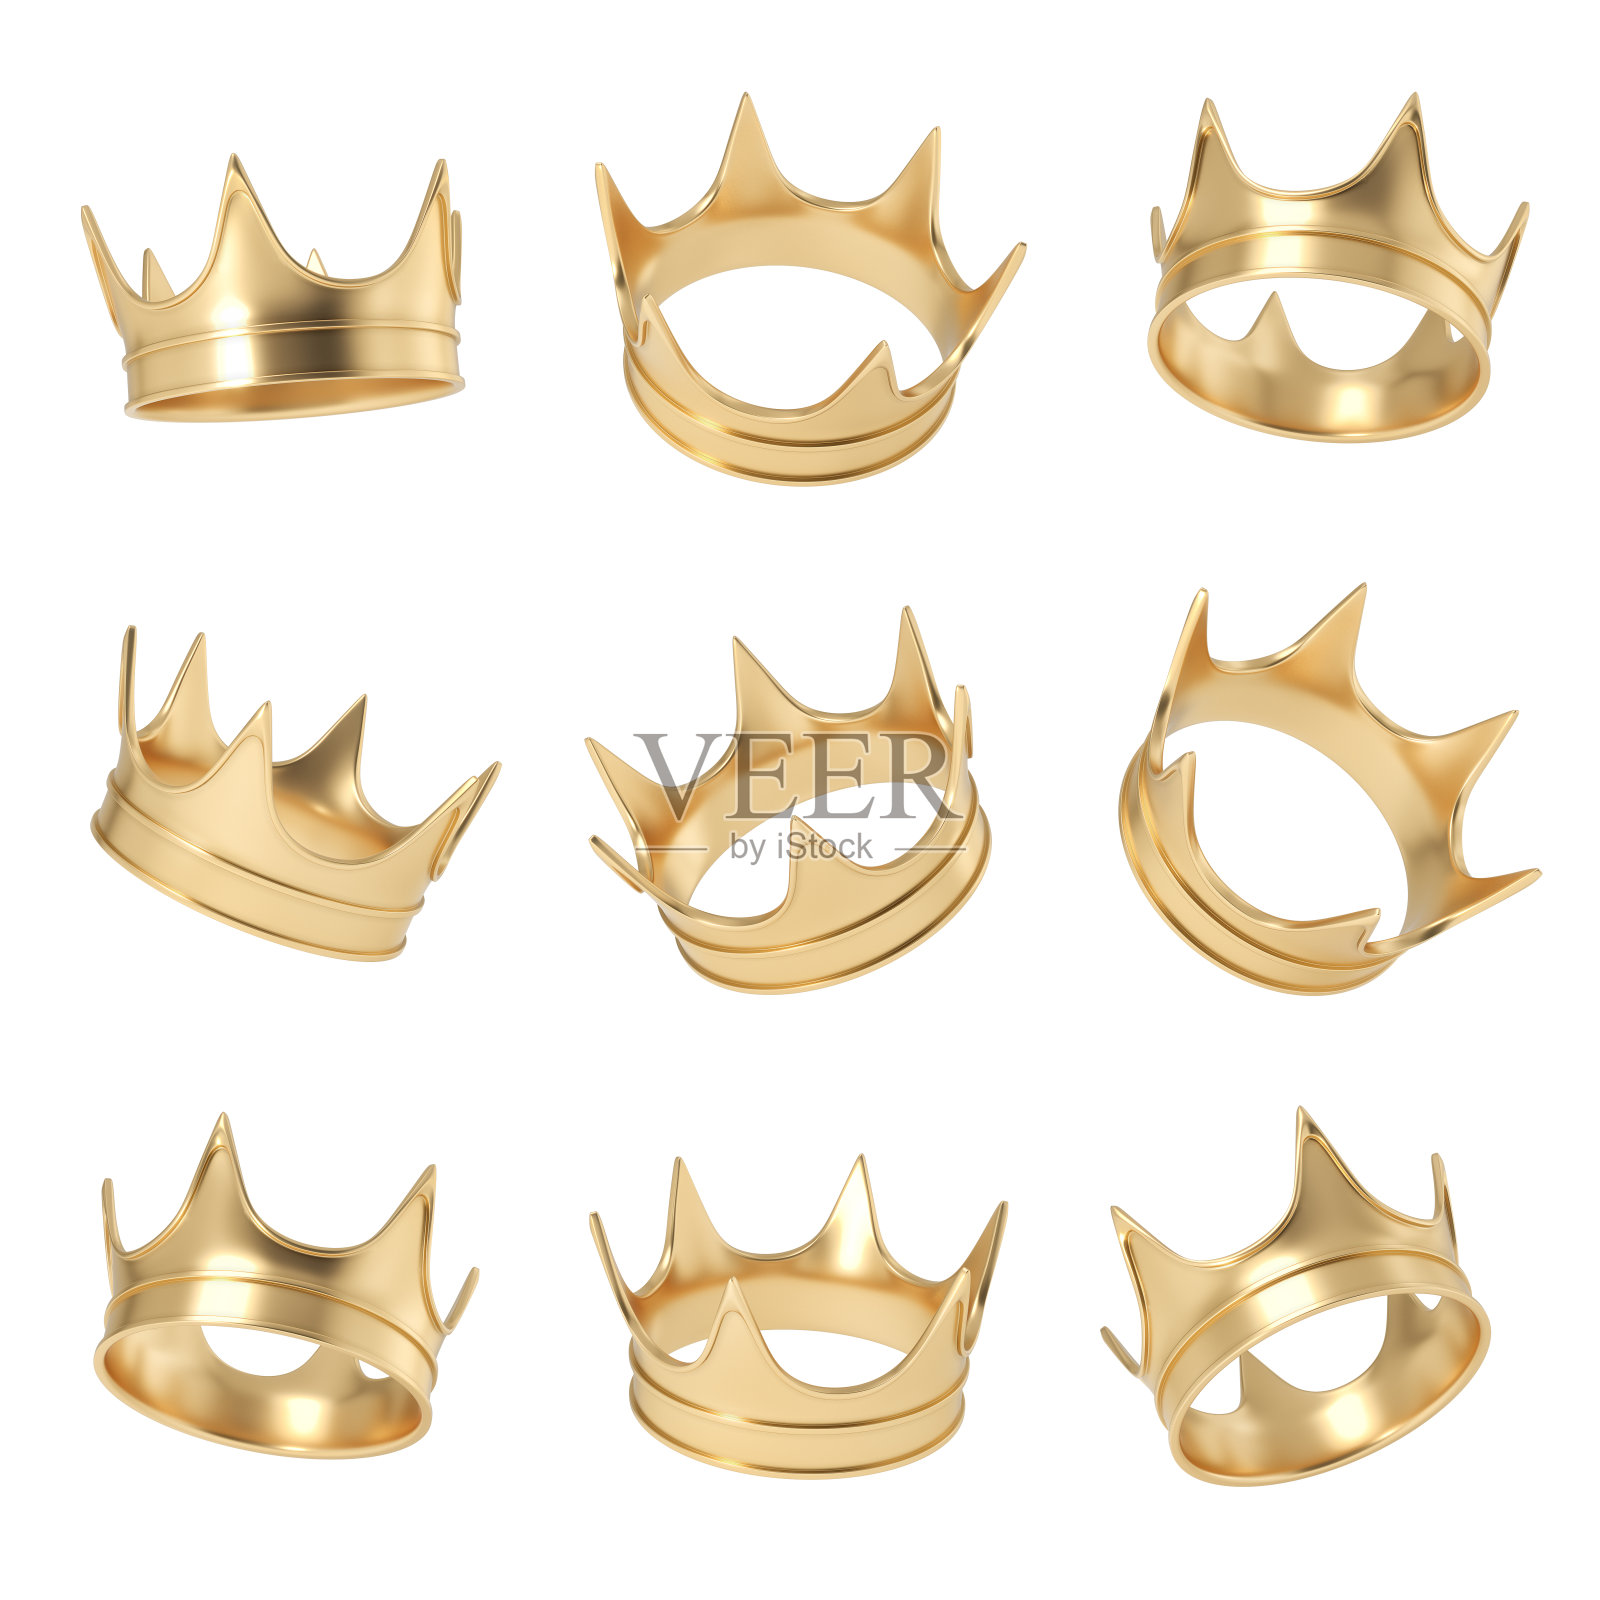 一套由几个金色皇冠在不同角度挂在白色背景上的3d渲染照片摄影图片